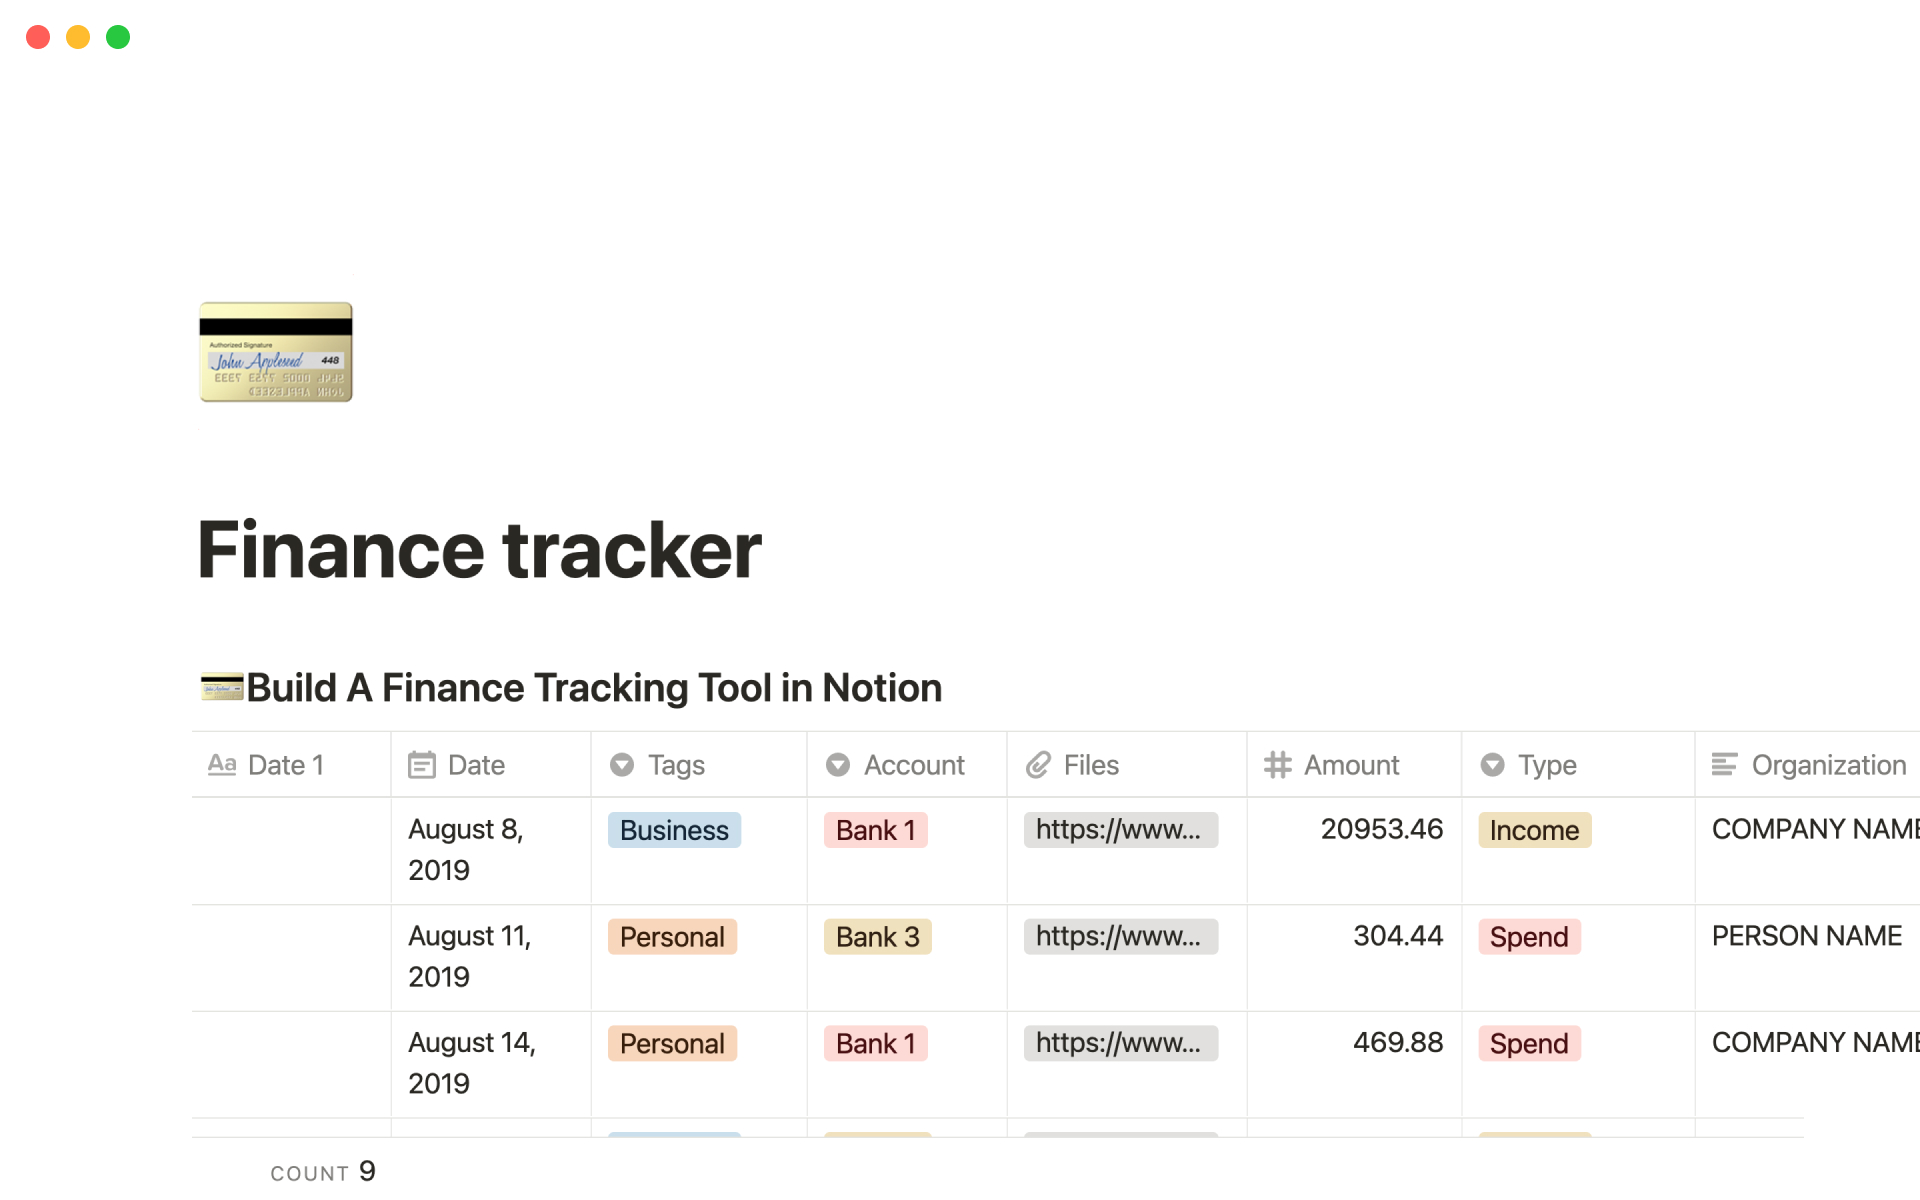 Uma prévia do modelo para Finance tracker